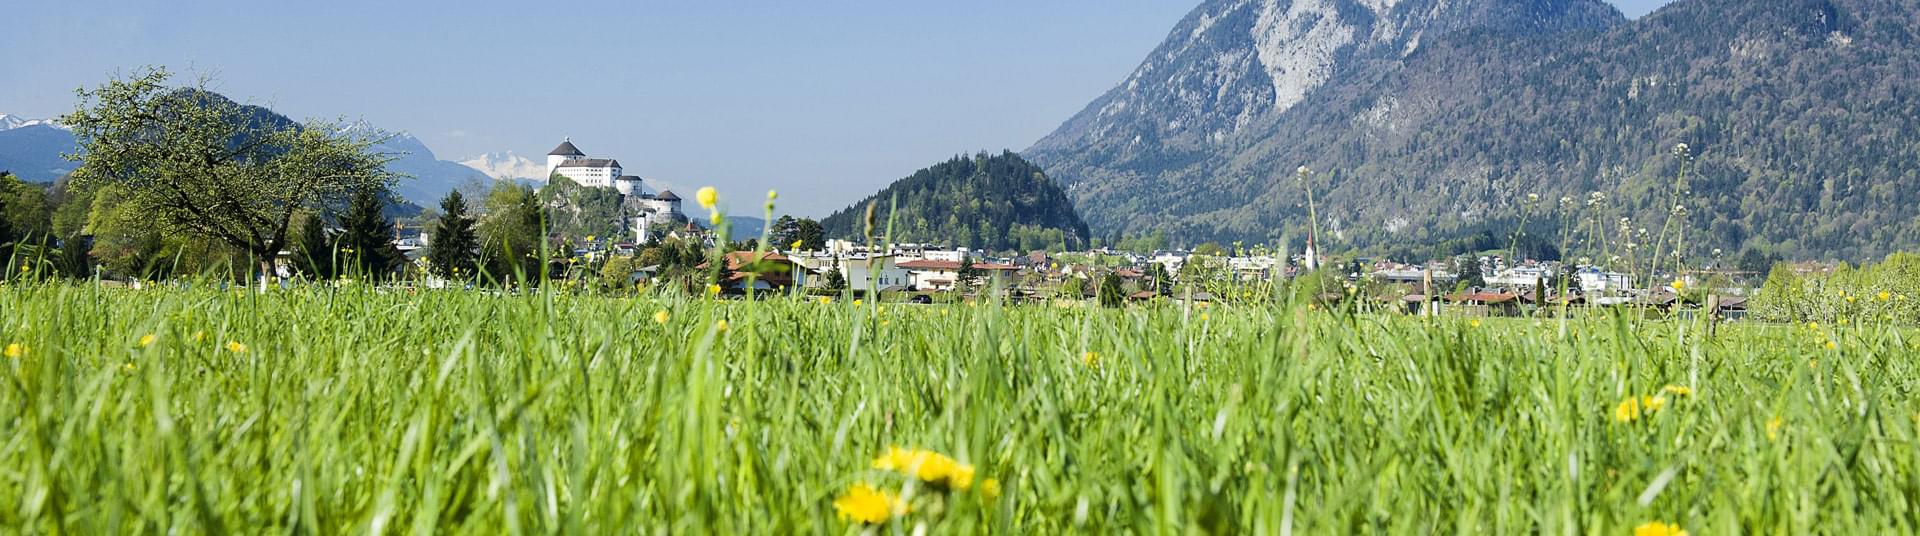 Stadt Kufstein - Blick über die Blumenwiese zur Festung